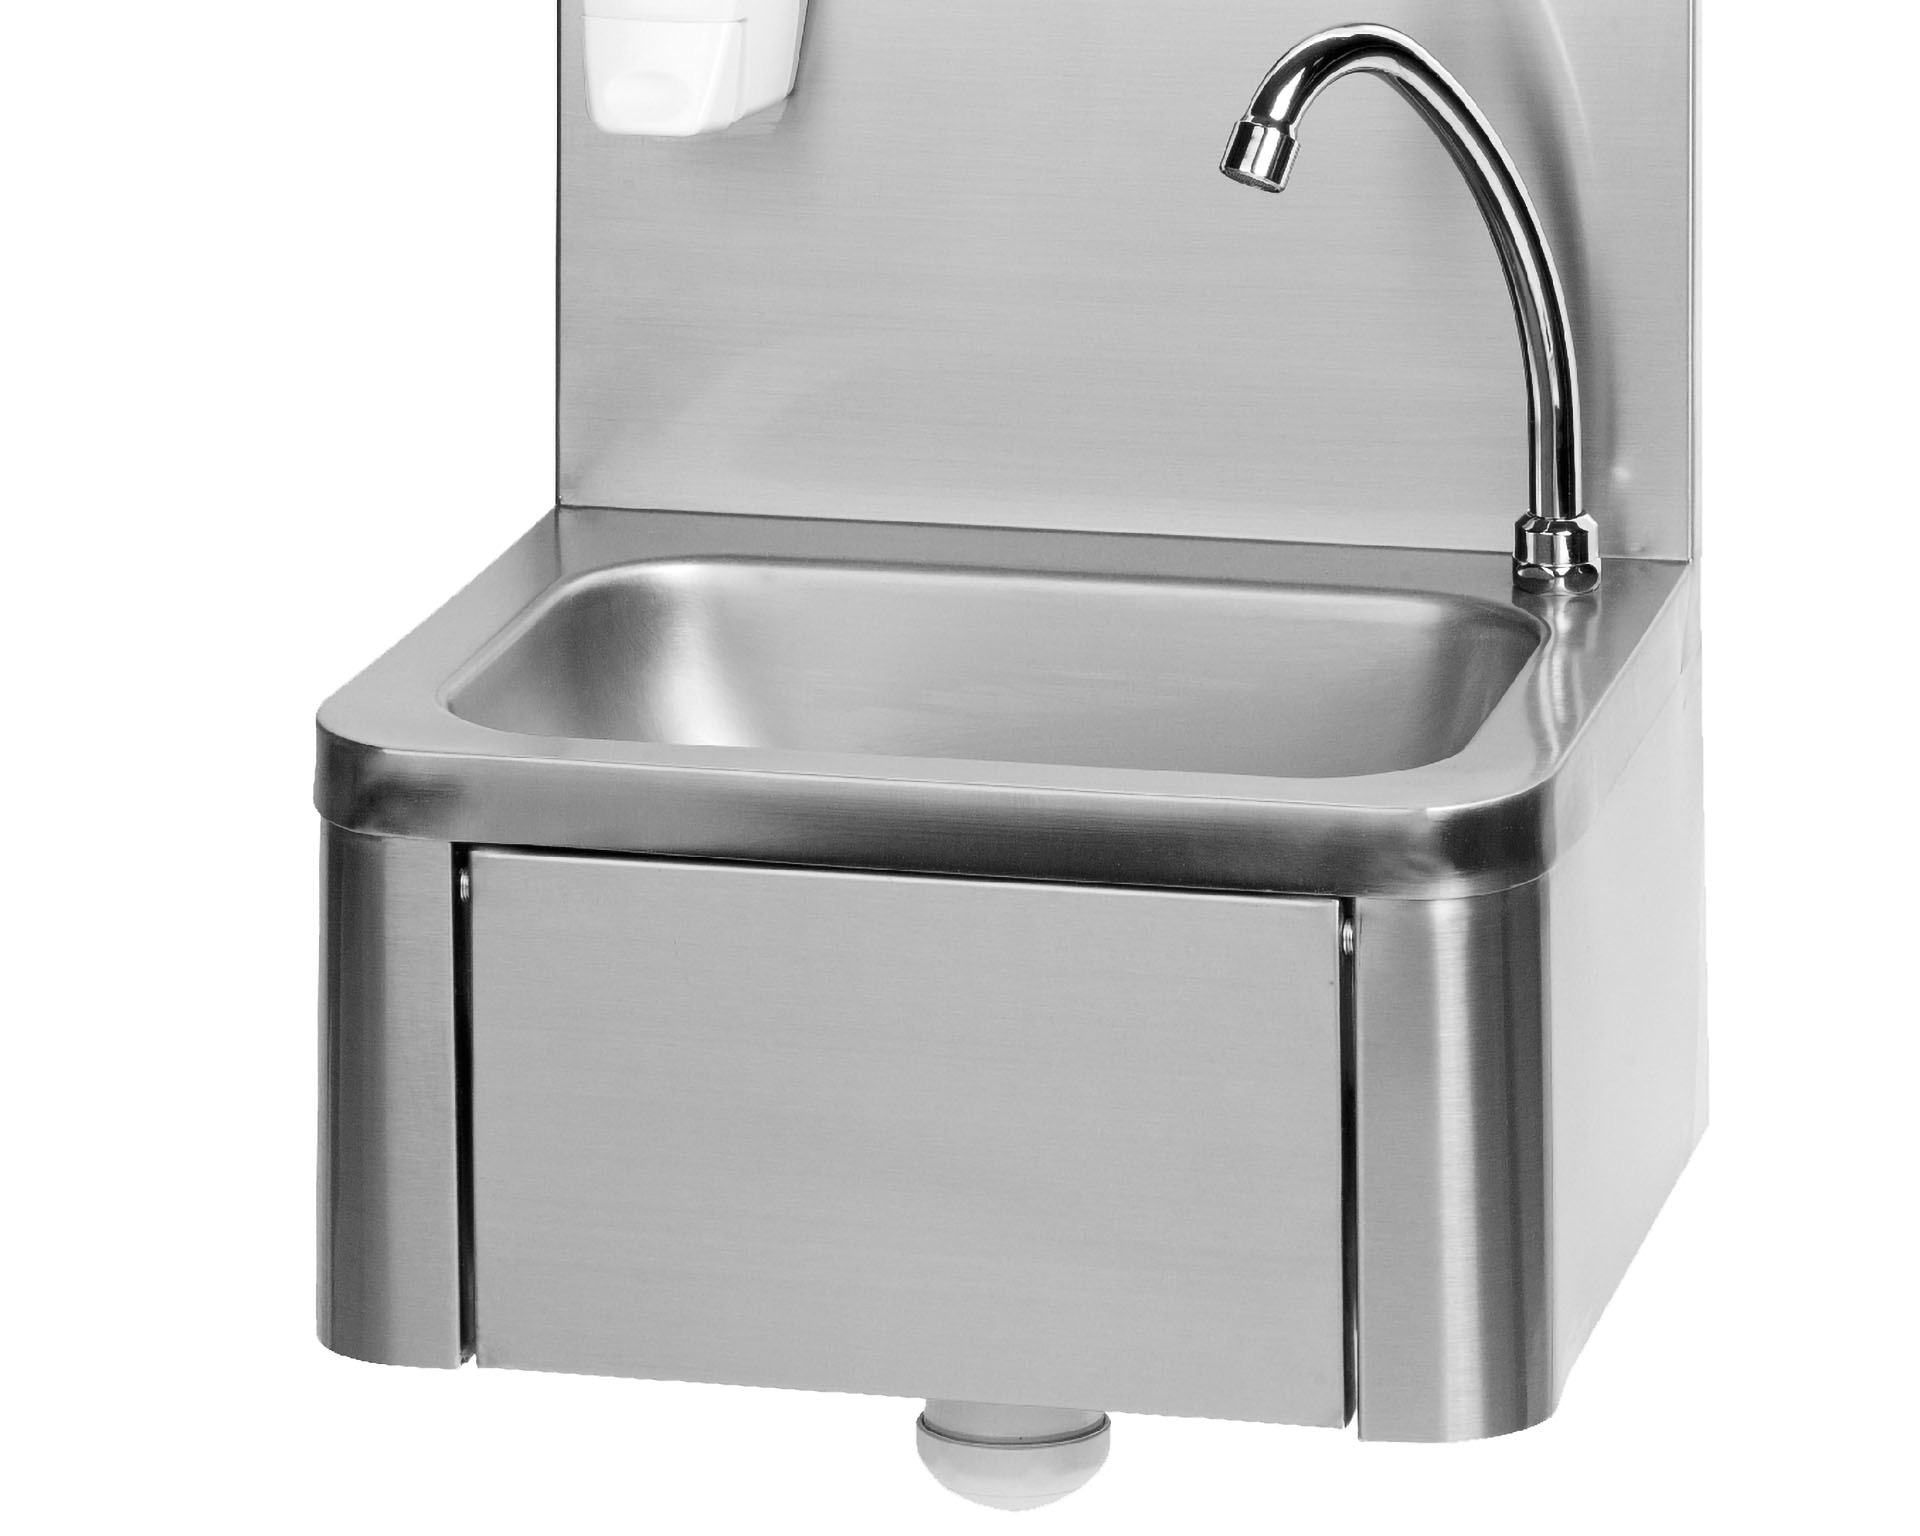 Edelstahl Handwaschbecken mit Kniebedienung - 400x340x(h)595mm